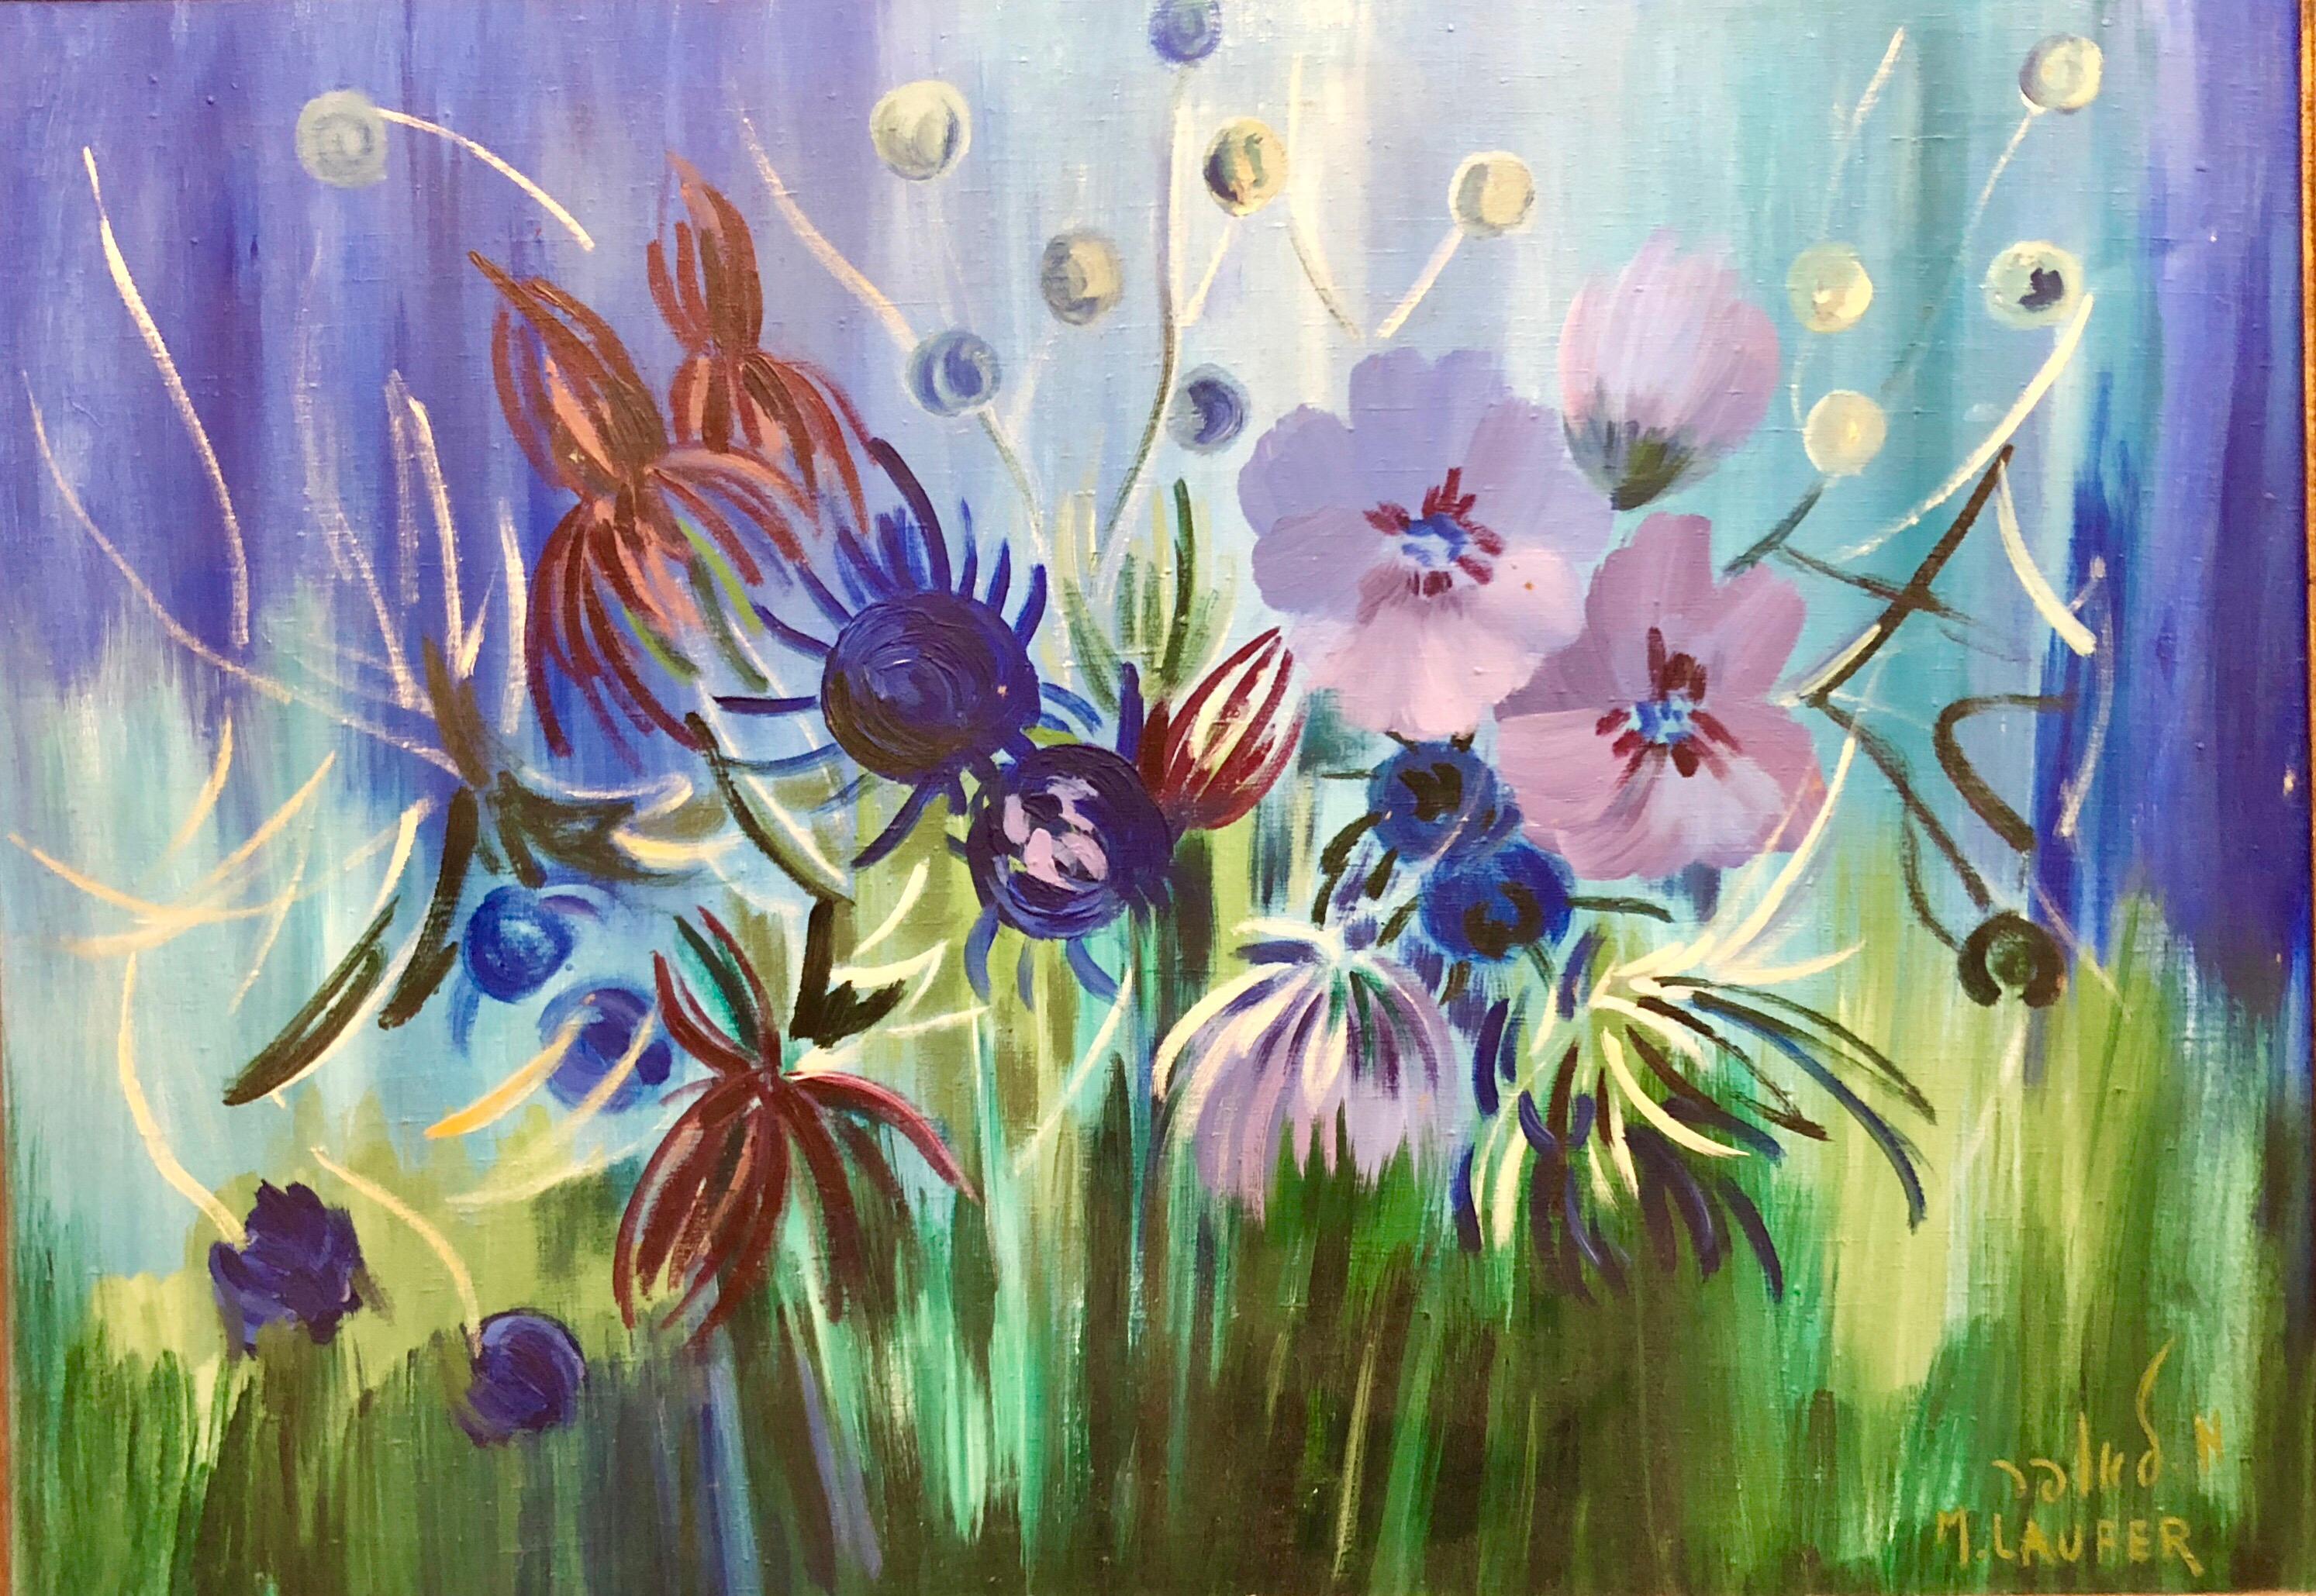 Grande peinture à l'huile israélienne de fleurs surréalistes vibrantes - Surréalisme Painting par Milia Laufer